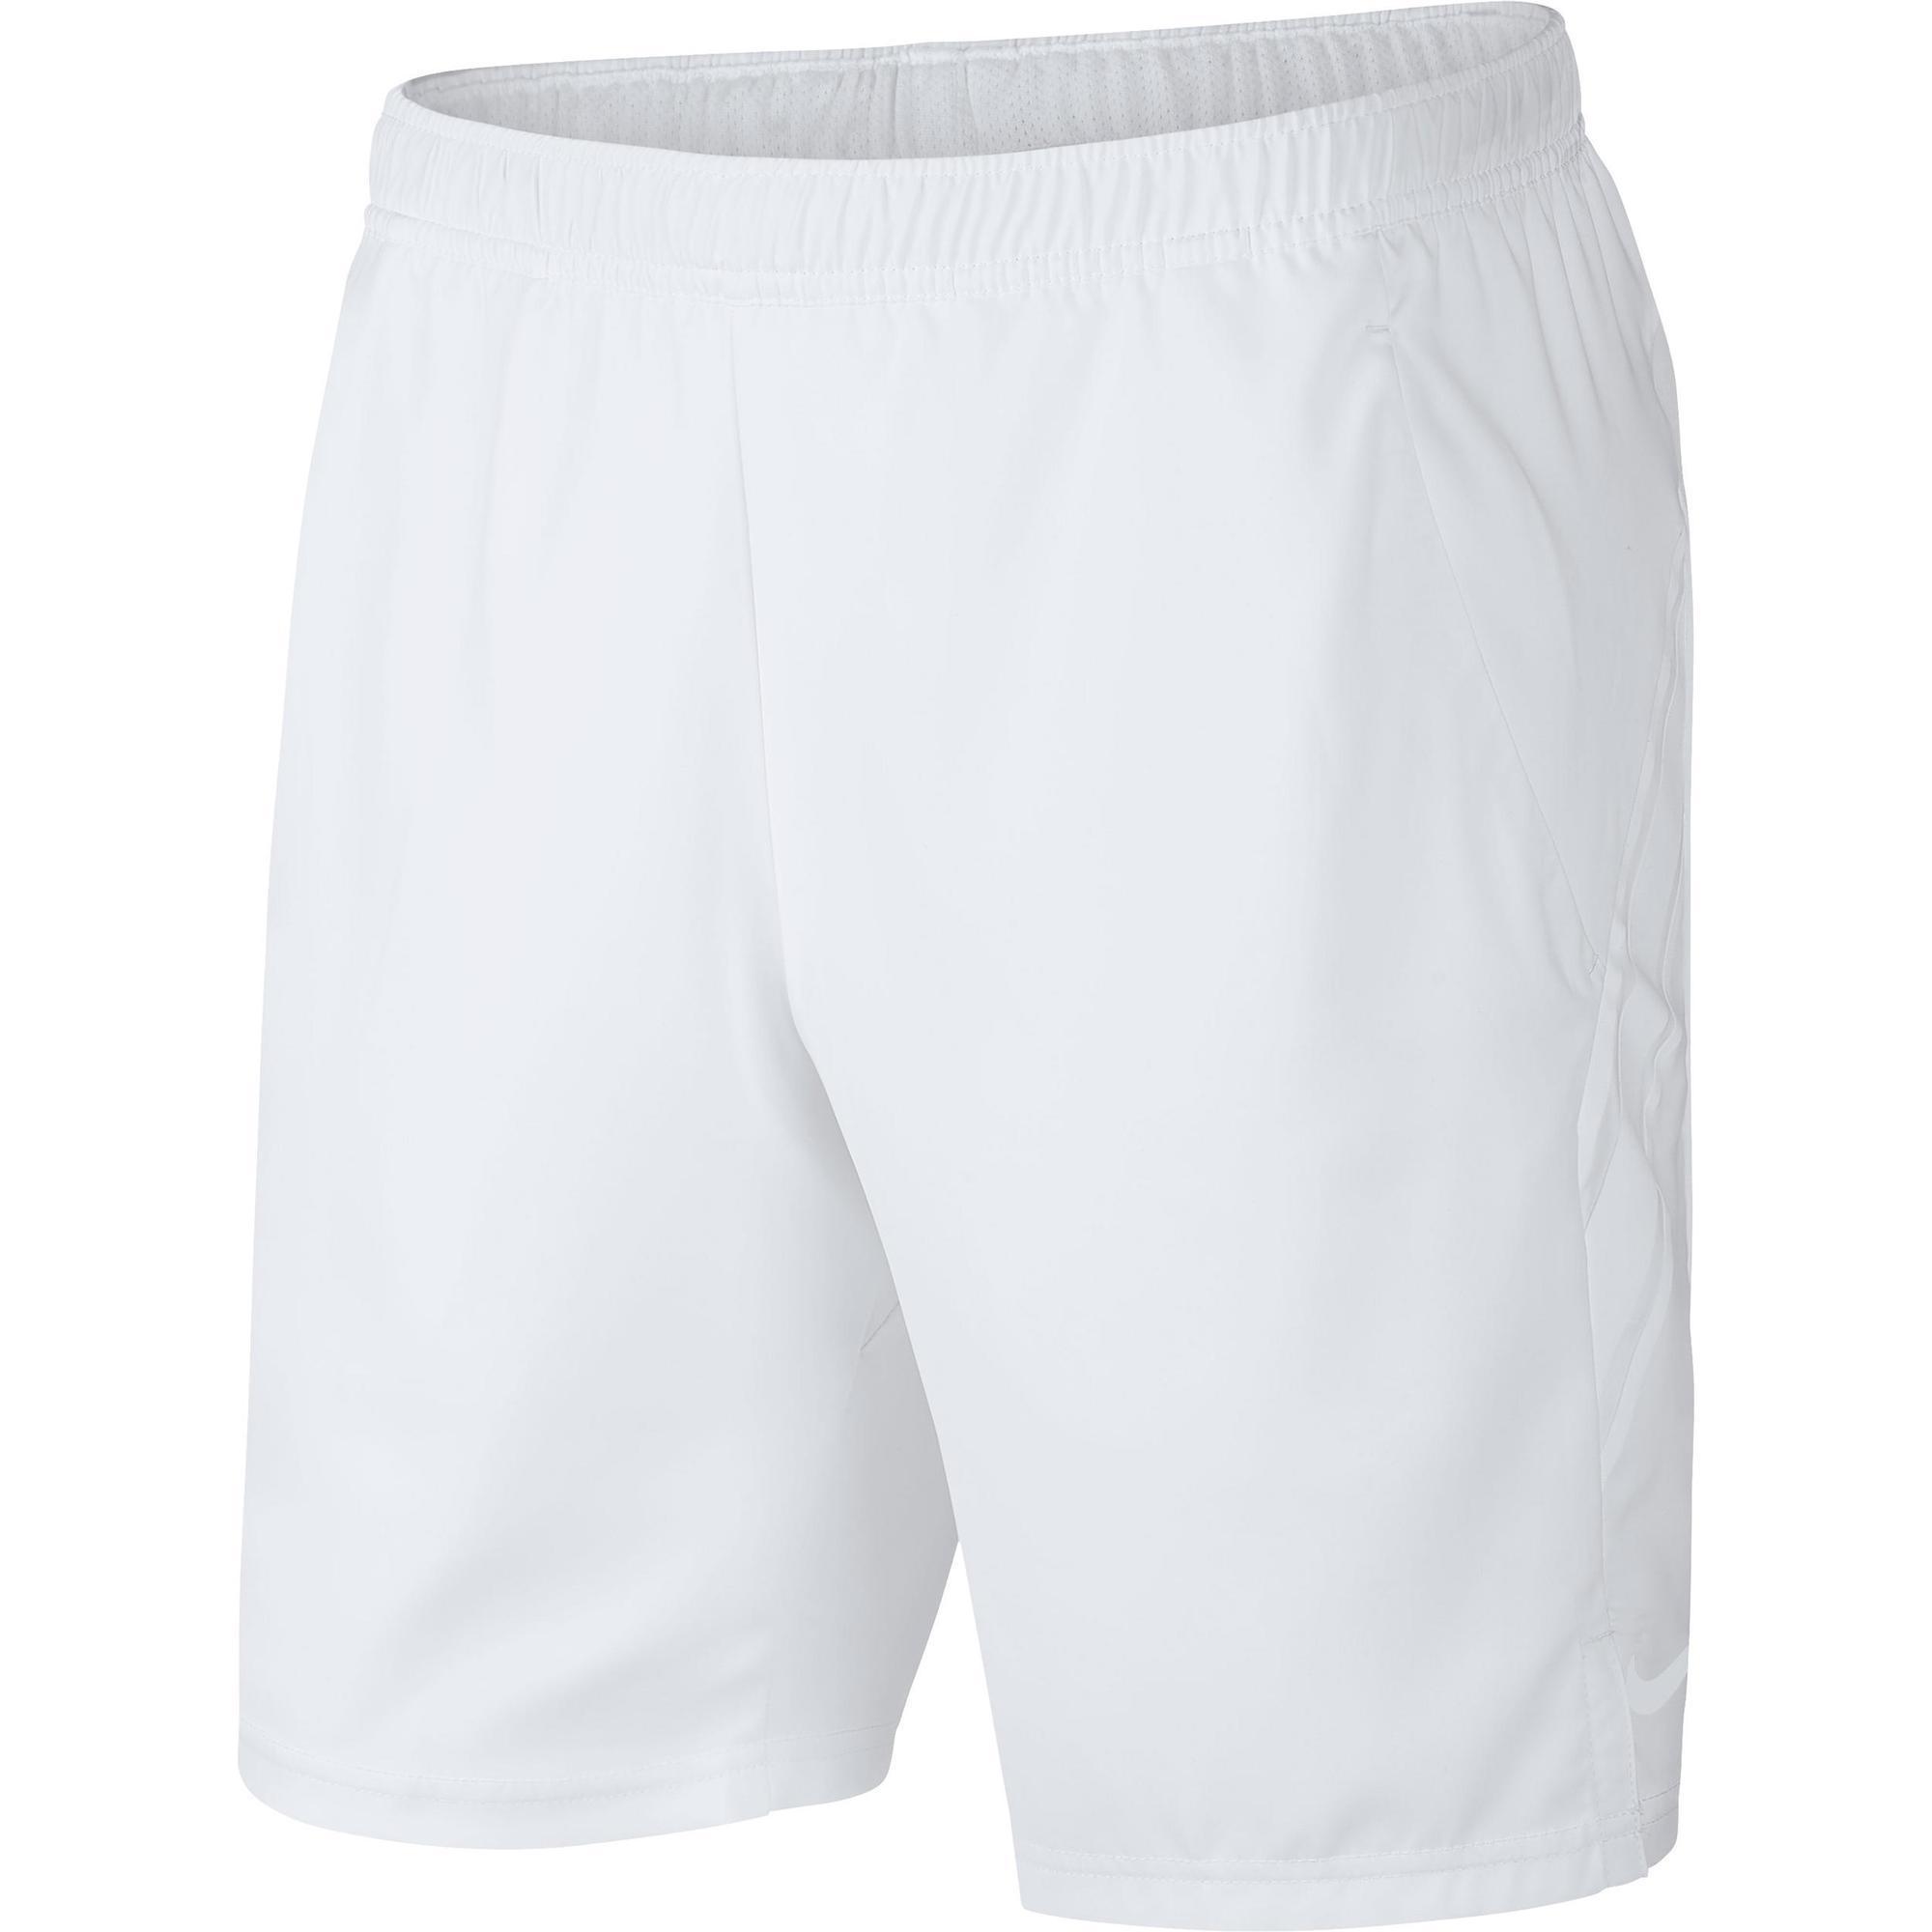 decathlon white shorts